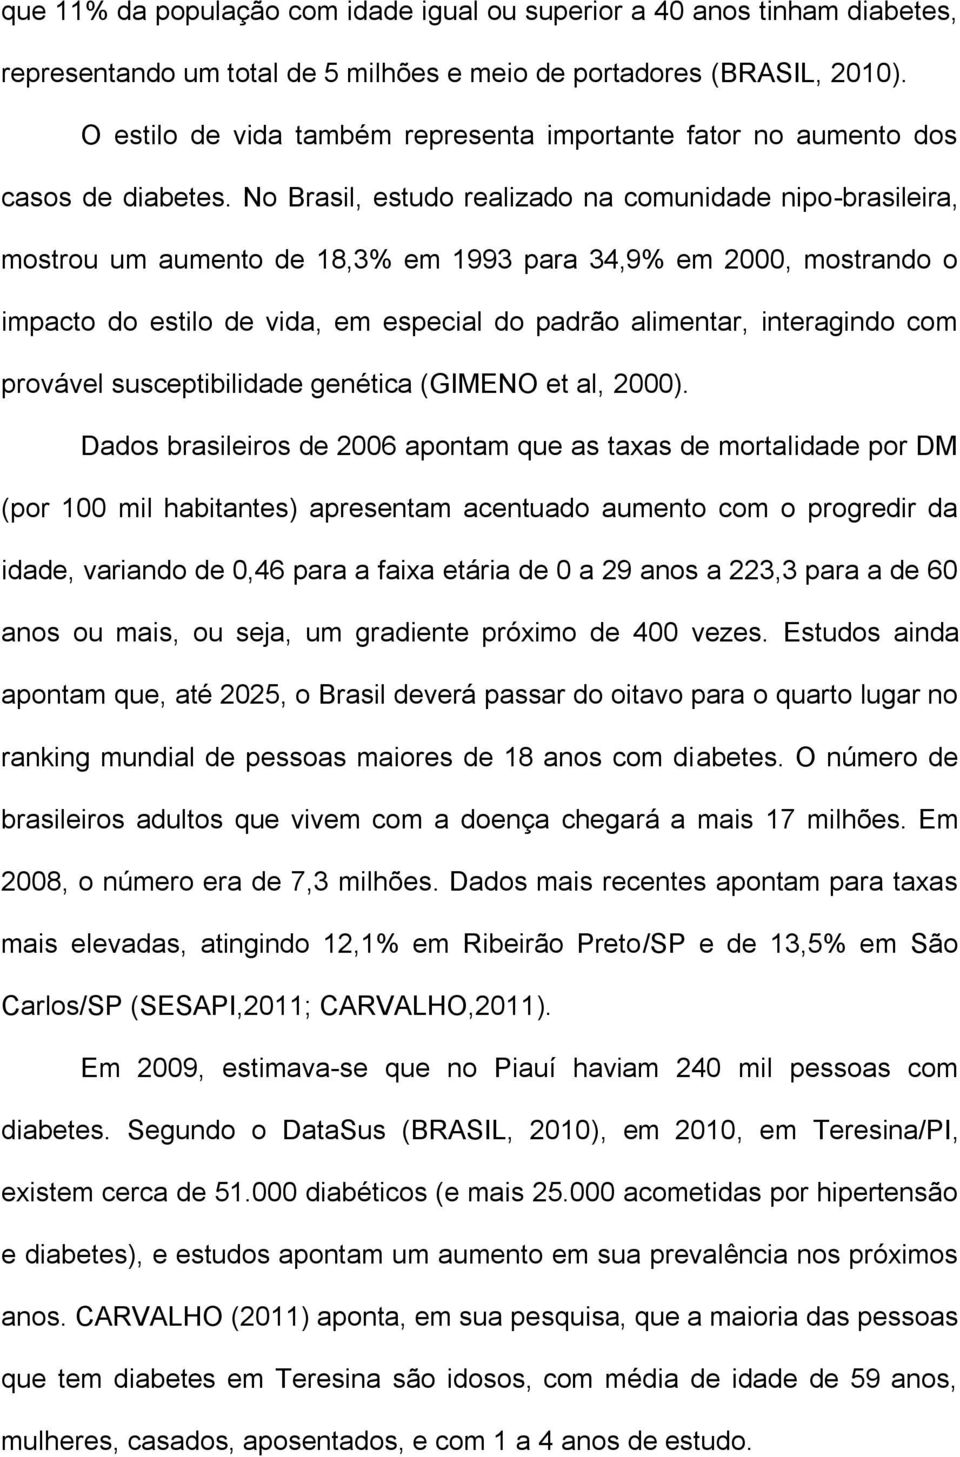 No Brasil, estudo realizado na comunidade nipo-brasileira, mostrou um aumento de 18,3% em 1993 para 34,9% em 2000, mostrando o impacto do estilo de vida, em especial do padrão alimentar, interagindo